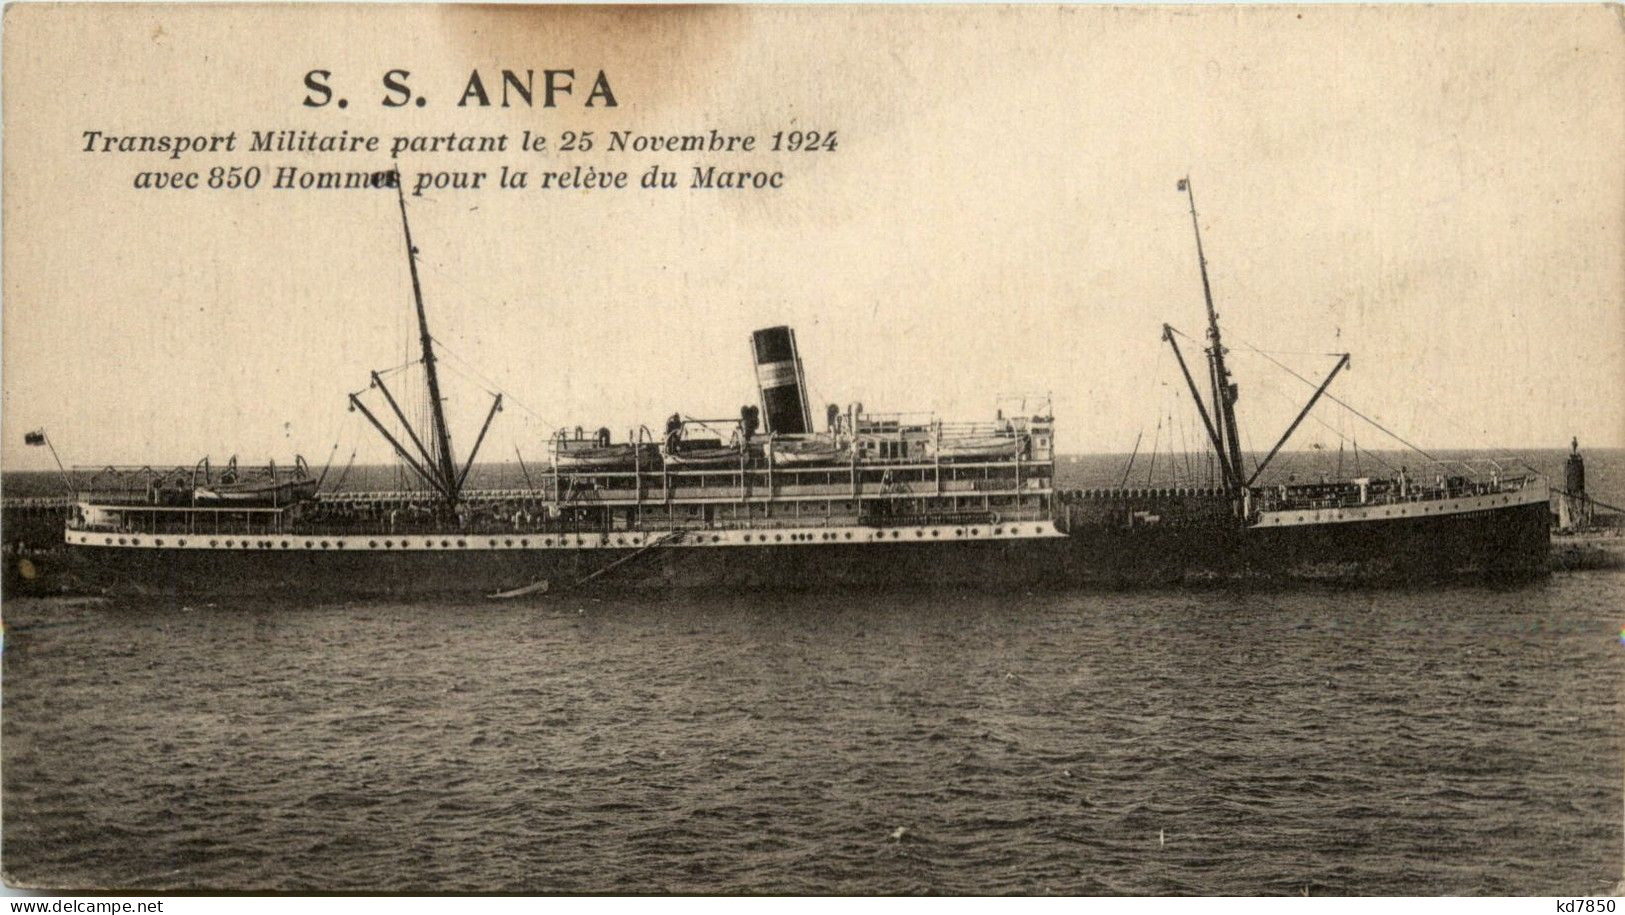 SS Anfa - Transport Militaire Partant De 25 Novembre 1924 - Paquebote